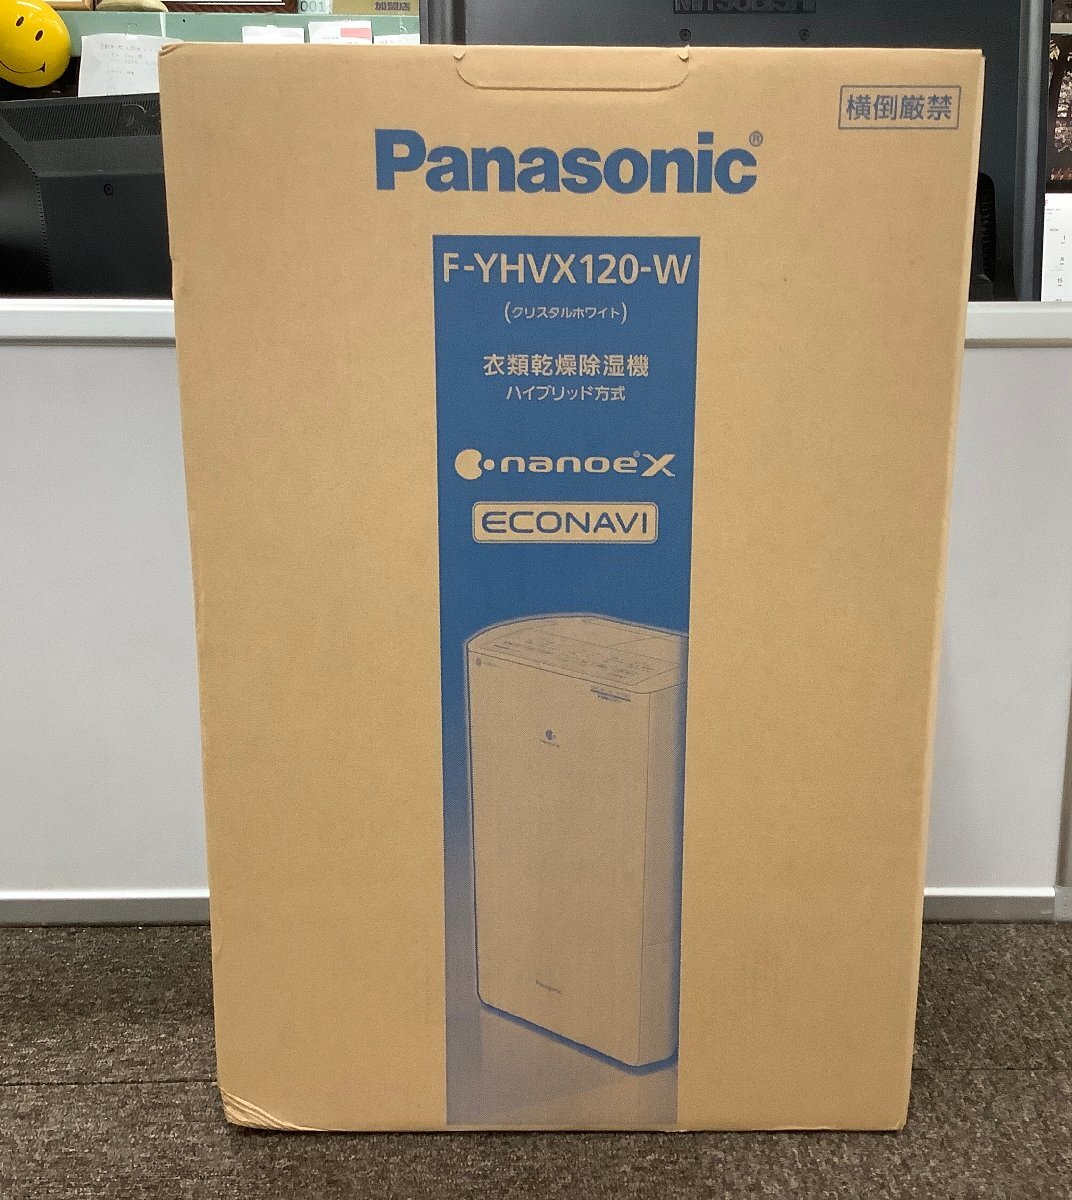  нераспечатанный товар Panasonic Panasonic одежда сухой осушитель F-YHVX120-W гибридный ECONAVI